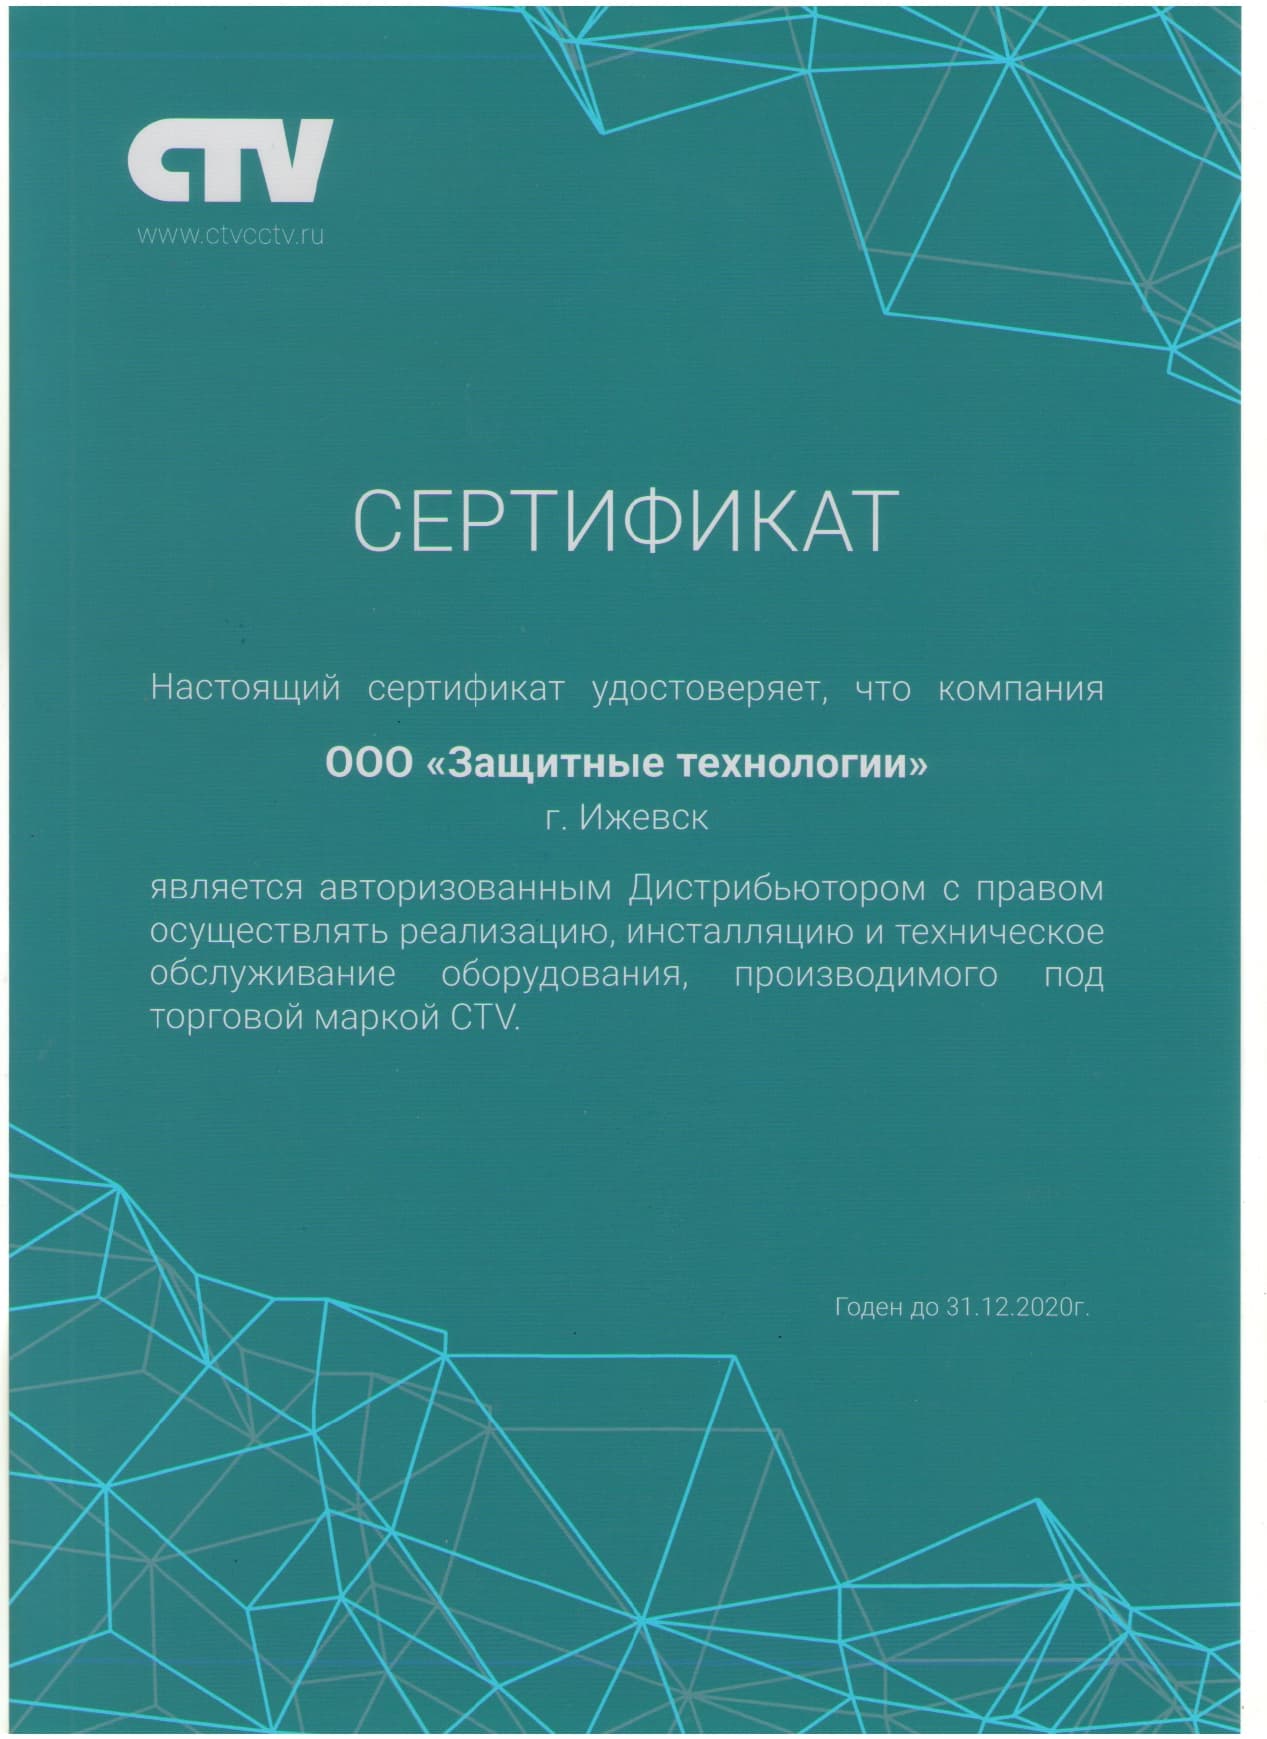 Сертификат дистрибьютора CTV